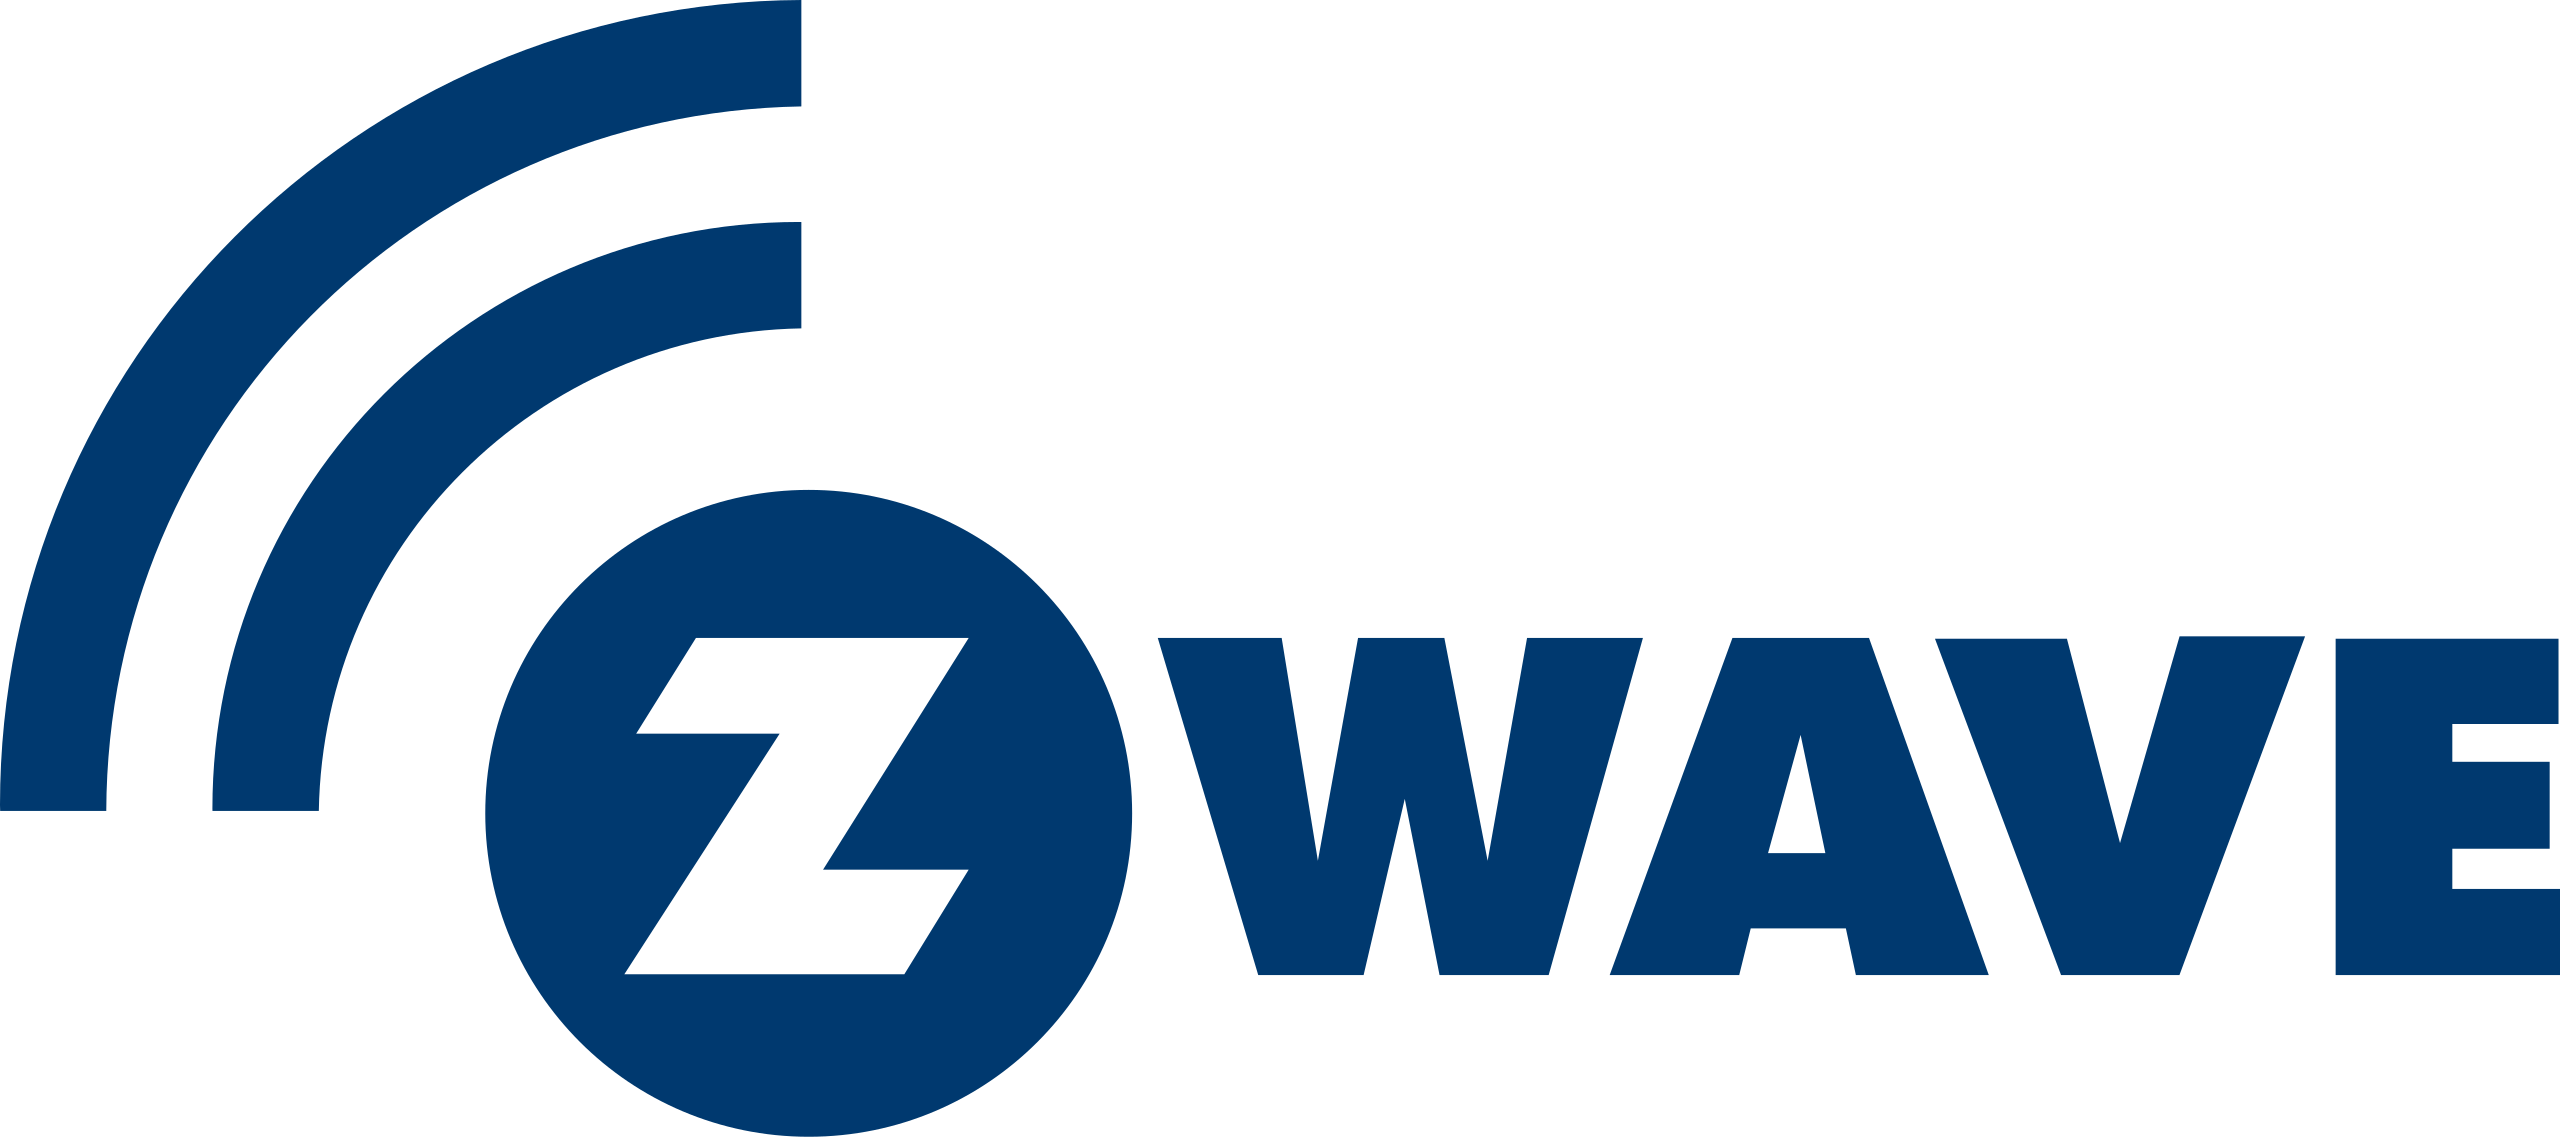 Z-Wave - Ja